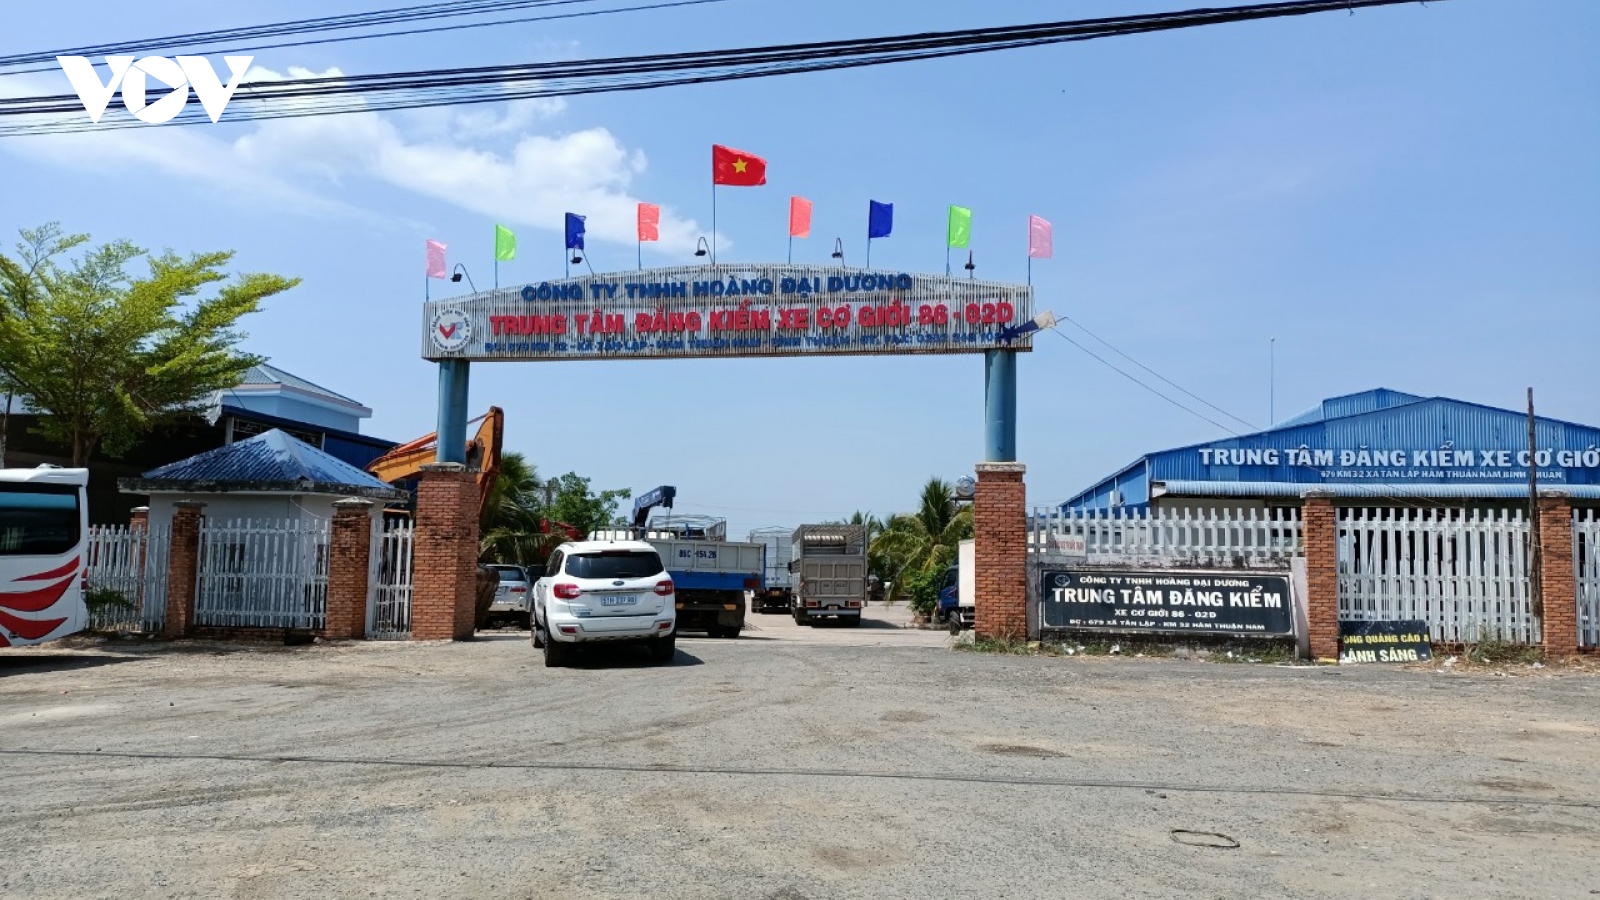 Bắt 2 phó giám đốc trung tâm đăng kiểm ở Bình Thuận